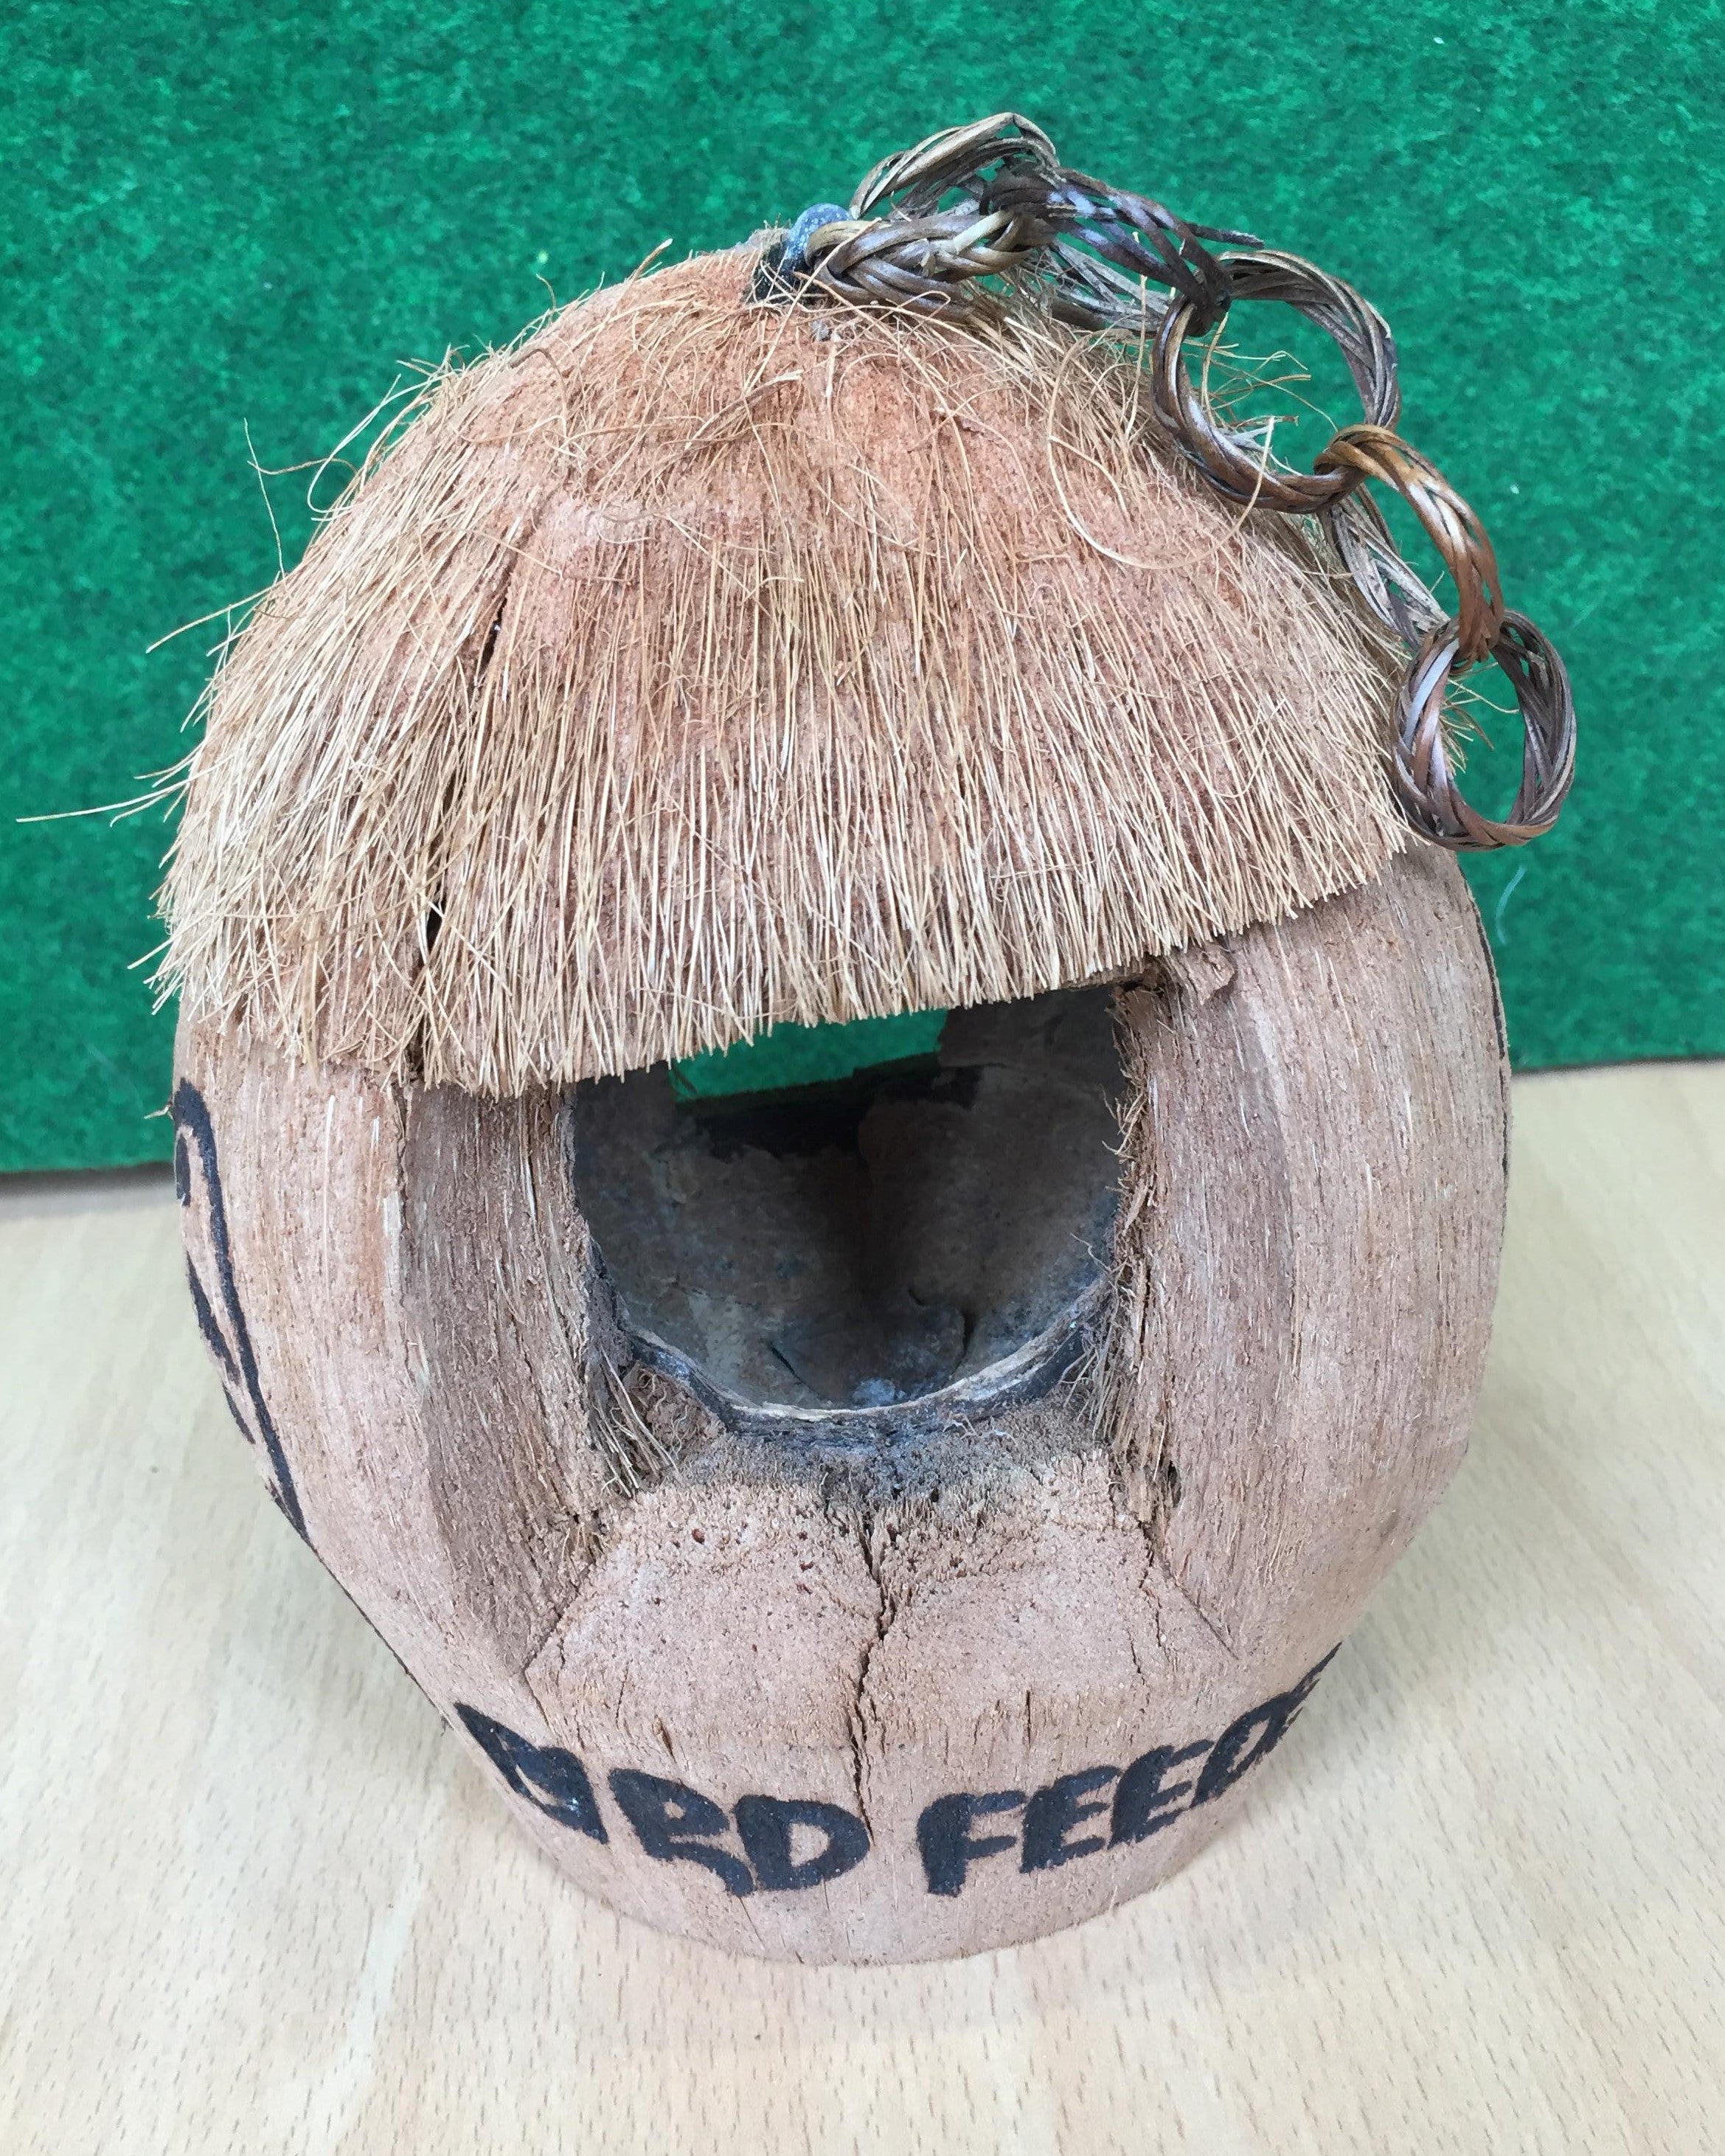 Coconut Bird House